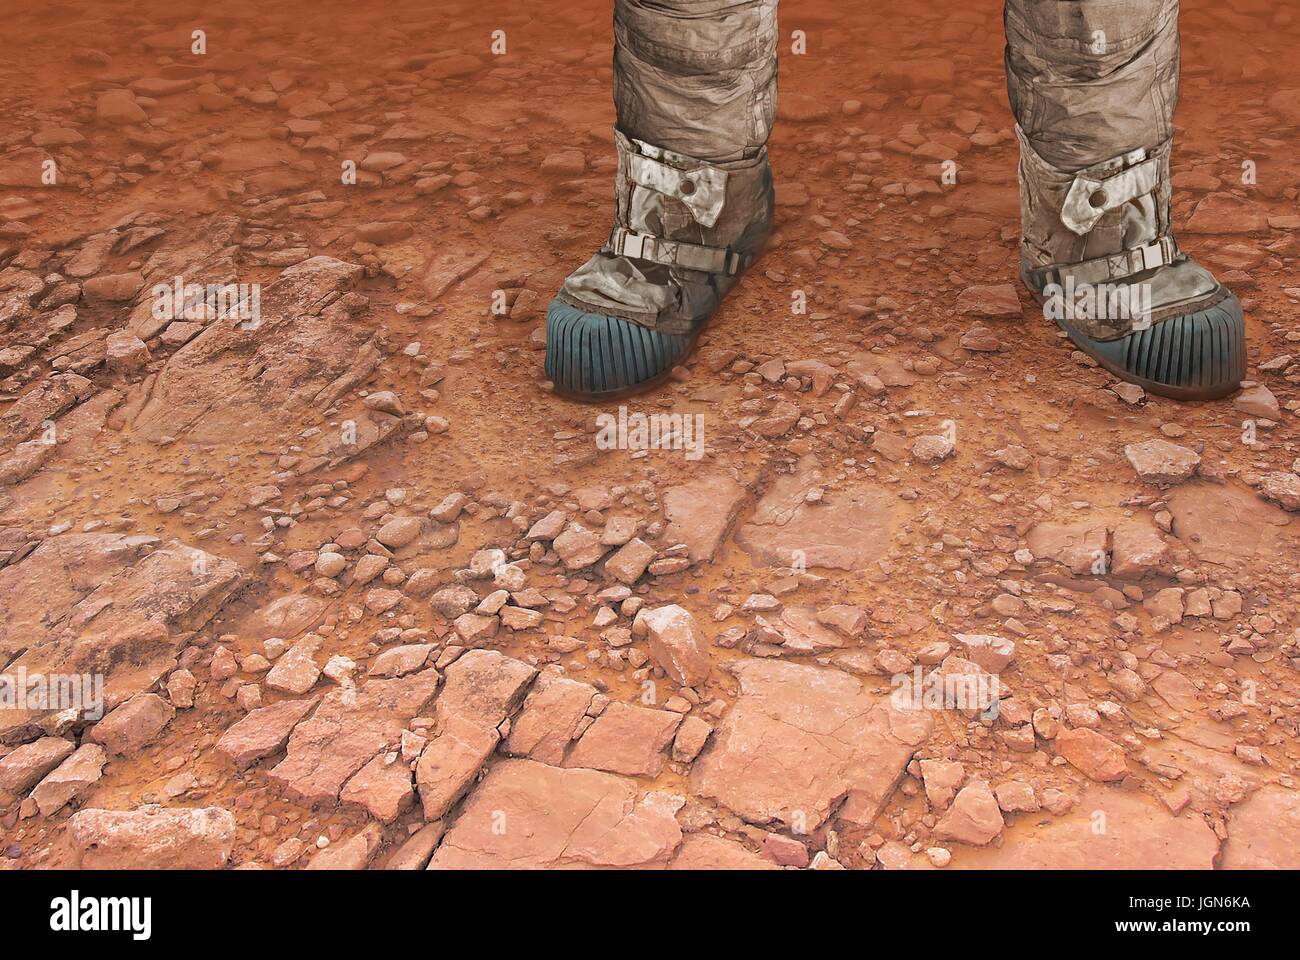 Menschen auf dem Mars, Kunstwerk. Eine Abbildung von einem Beinpaar auf der Oberfläche des roten Planeten, vielleicht zur zukünftigen Astronauten â €"oder Touristen. Eine menschliche Expedition zum Mars wäre teuer, gefährlich, aber lohnende Venture. Stockfoto